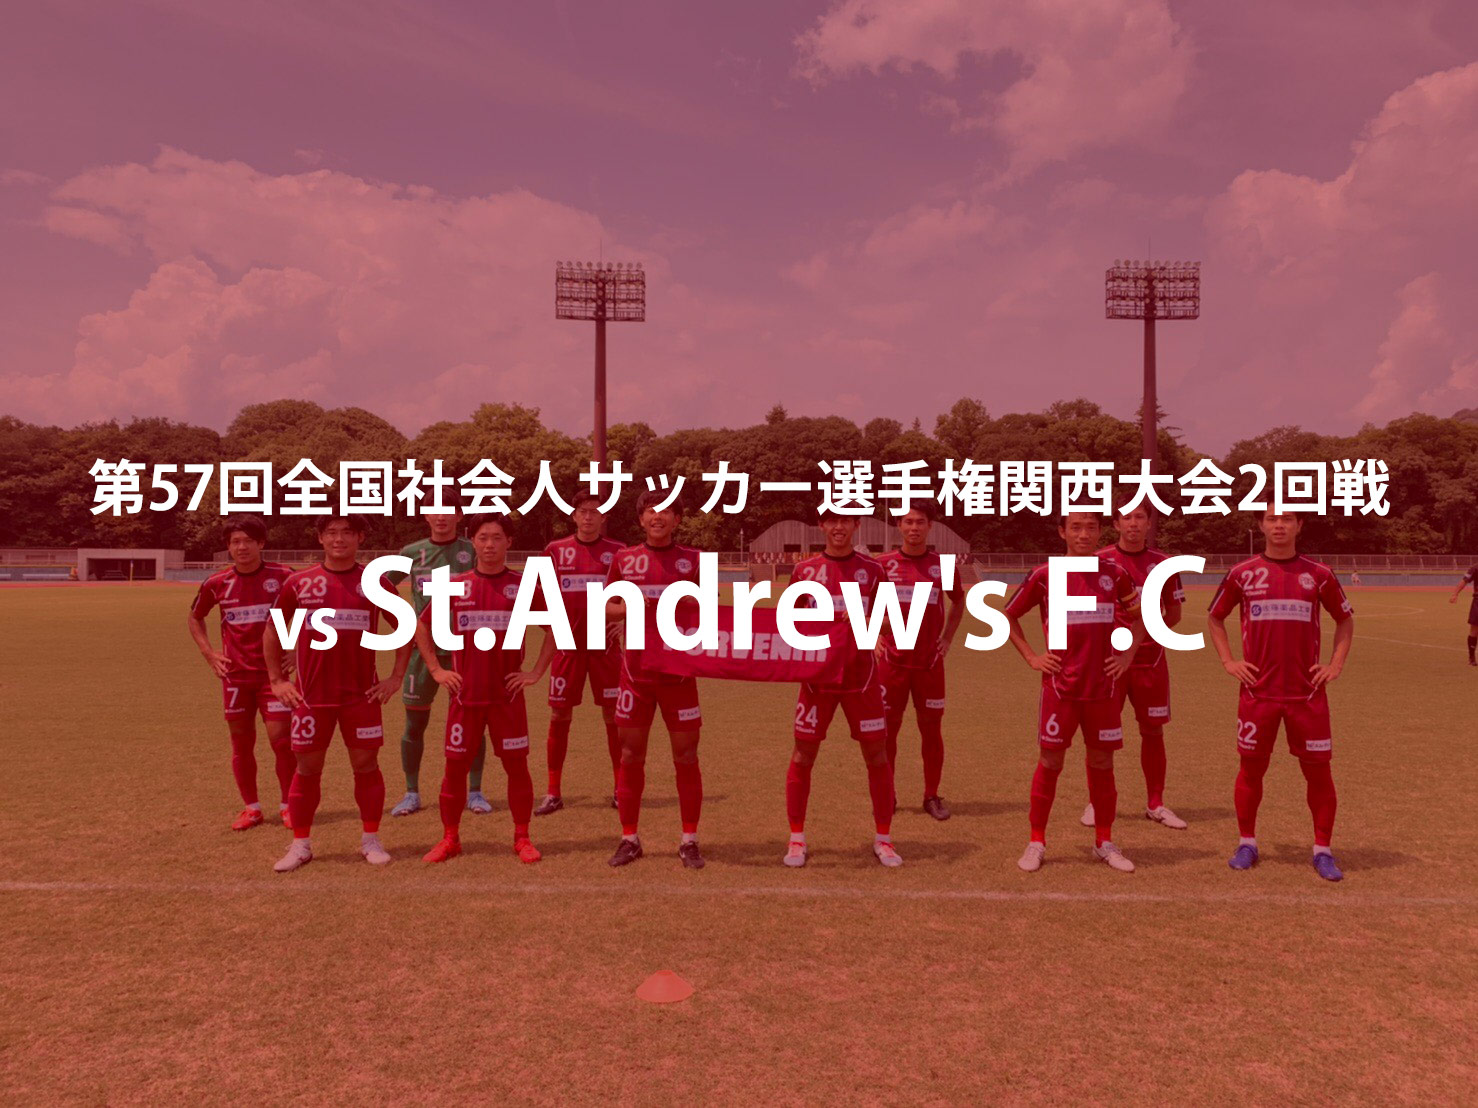 St.Andrew's F.C